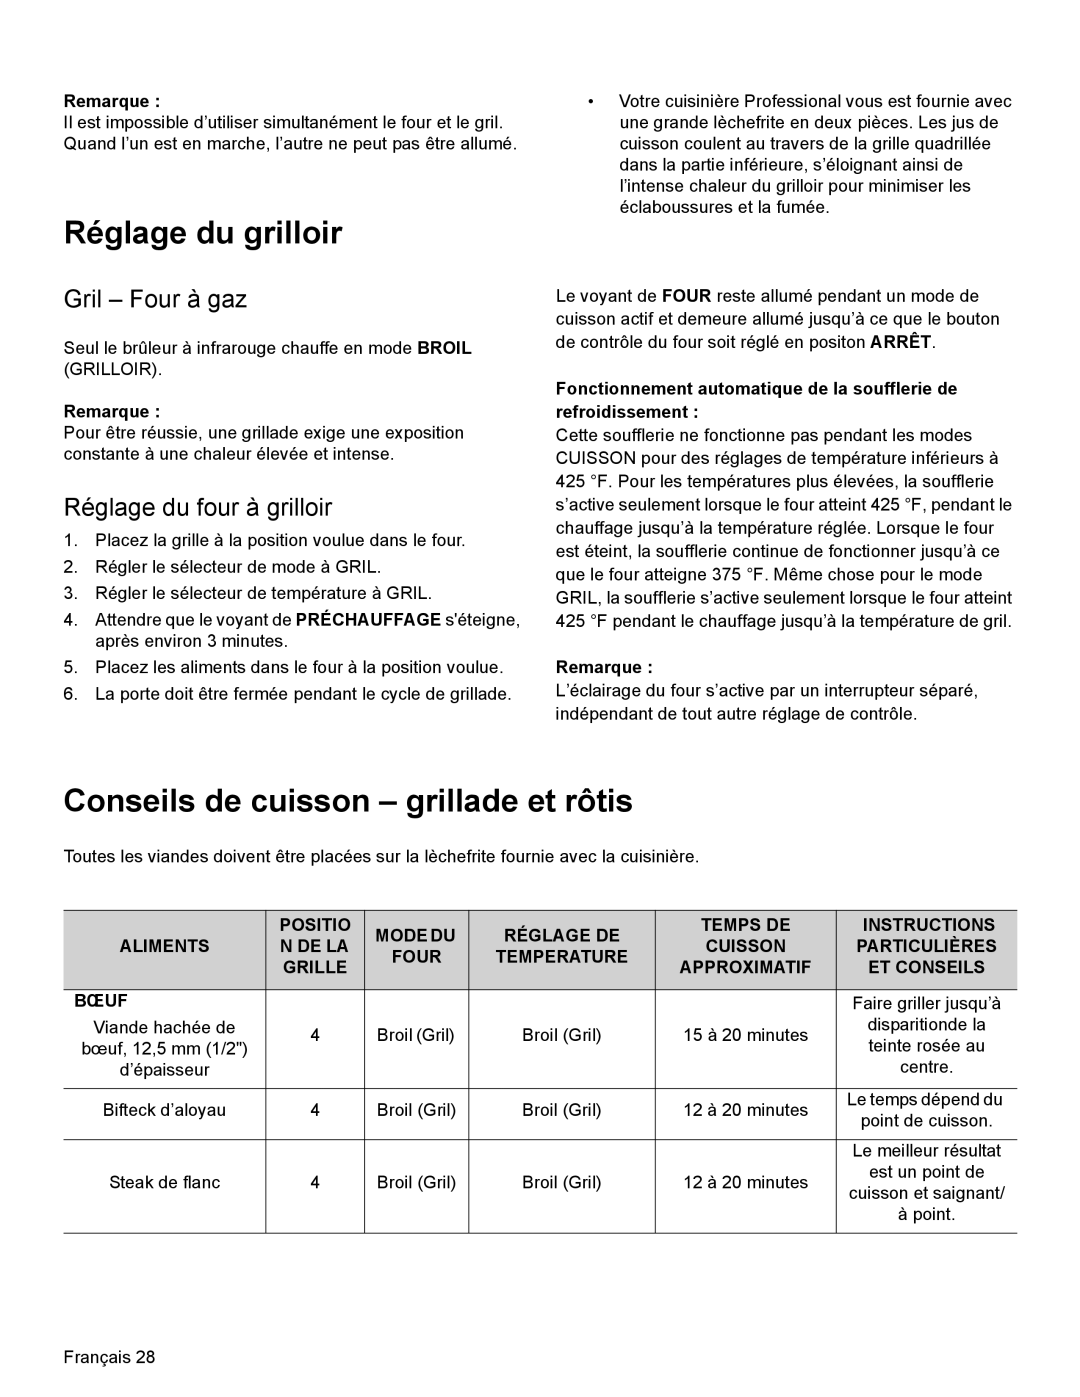 Thermador PRL36, PRG30, PRL30 manual Réglage du grilloir, Conseils de cuisson - grillade et rôtis, Gril - Four à gaz 